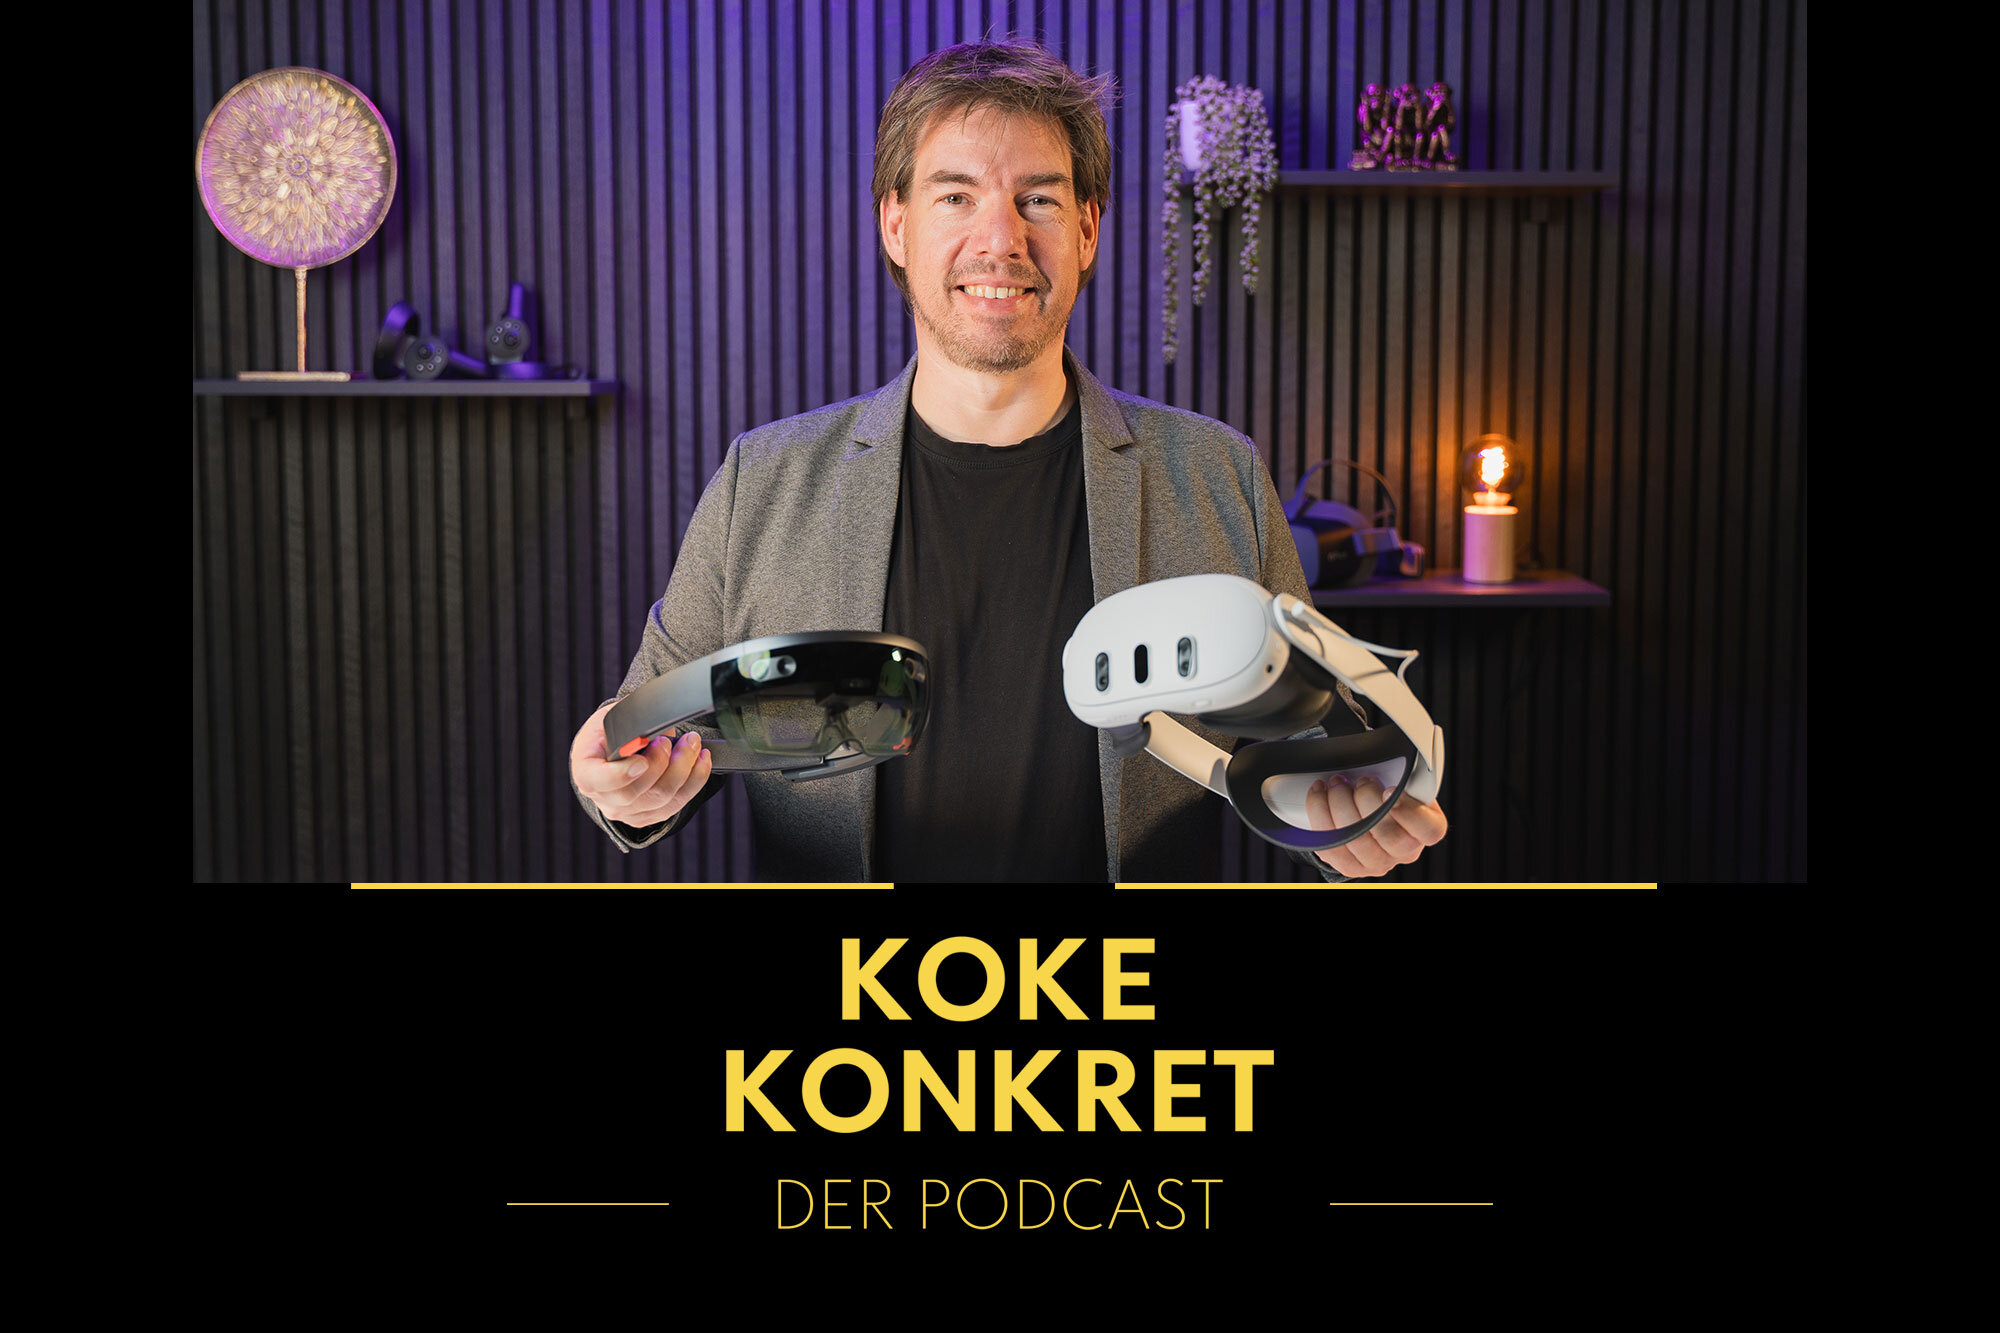 Dirk Koke, Experte für Augmented und Virtual Reality, präsentiert neuestes VR und AR Innovationen.